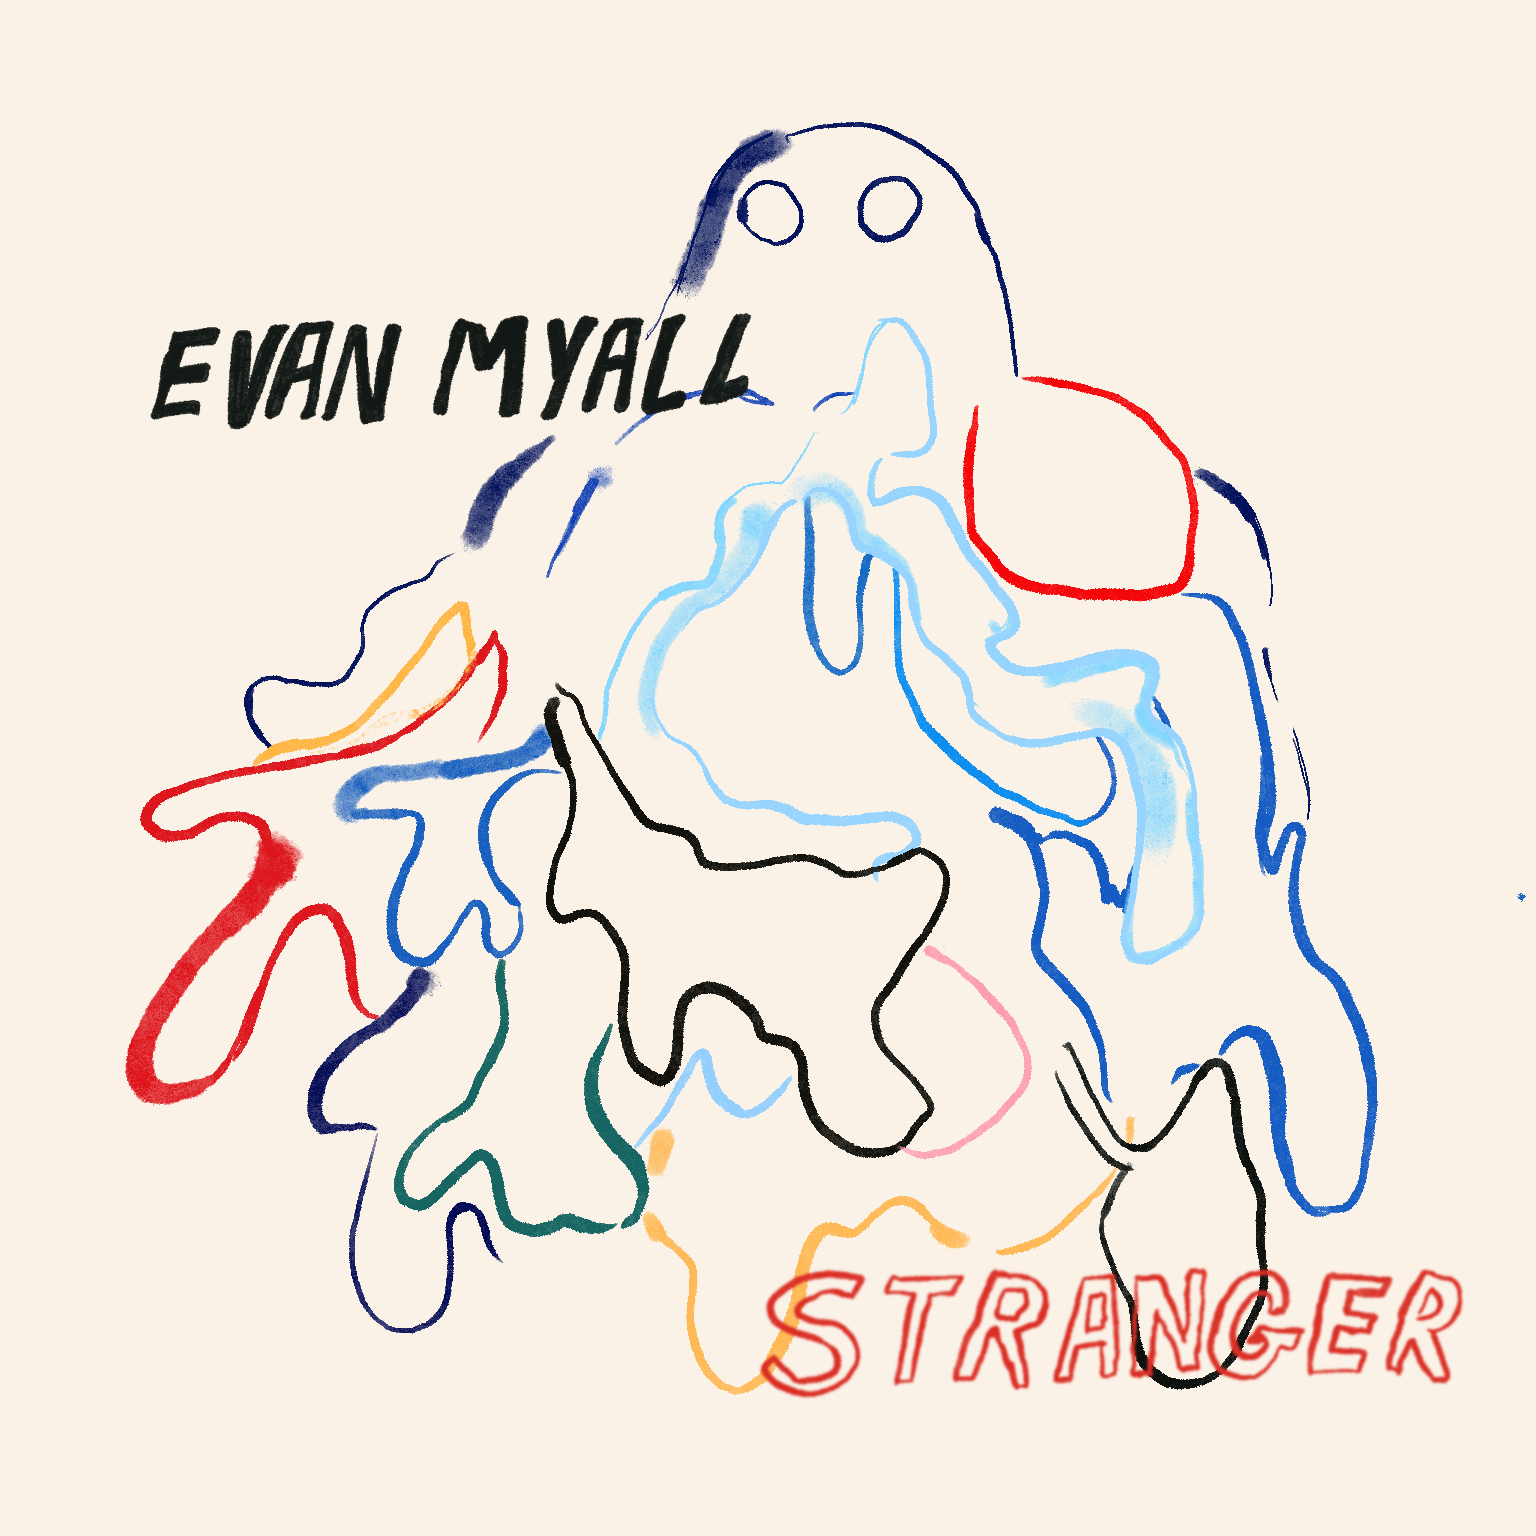 Artwork for Stranger by Evan Myall